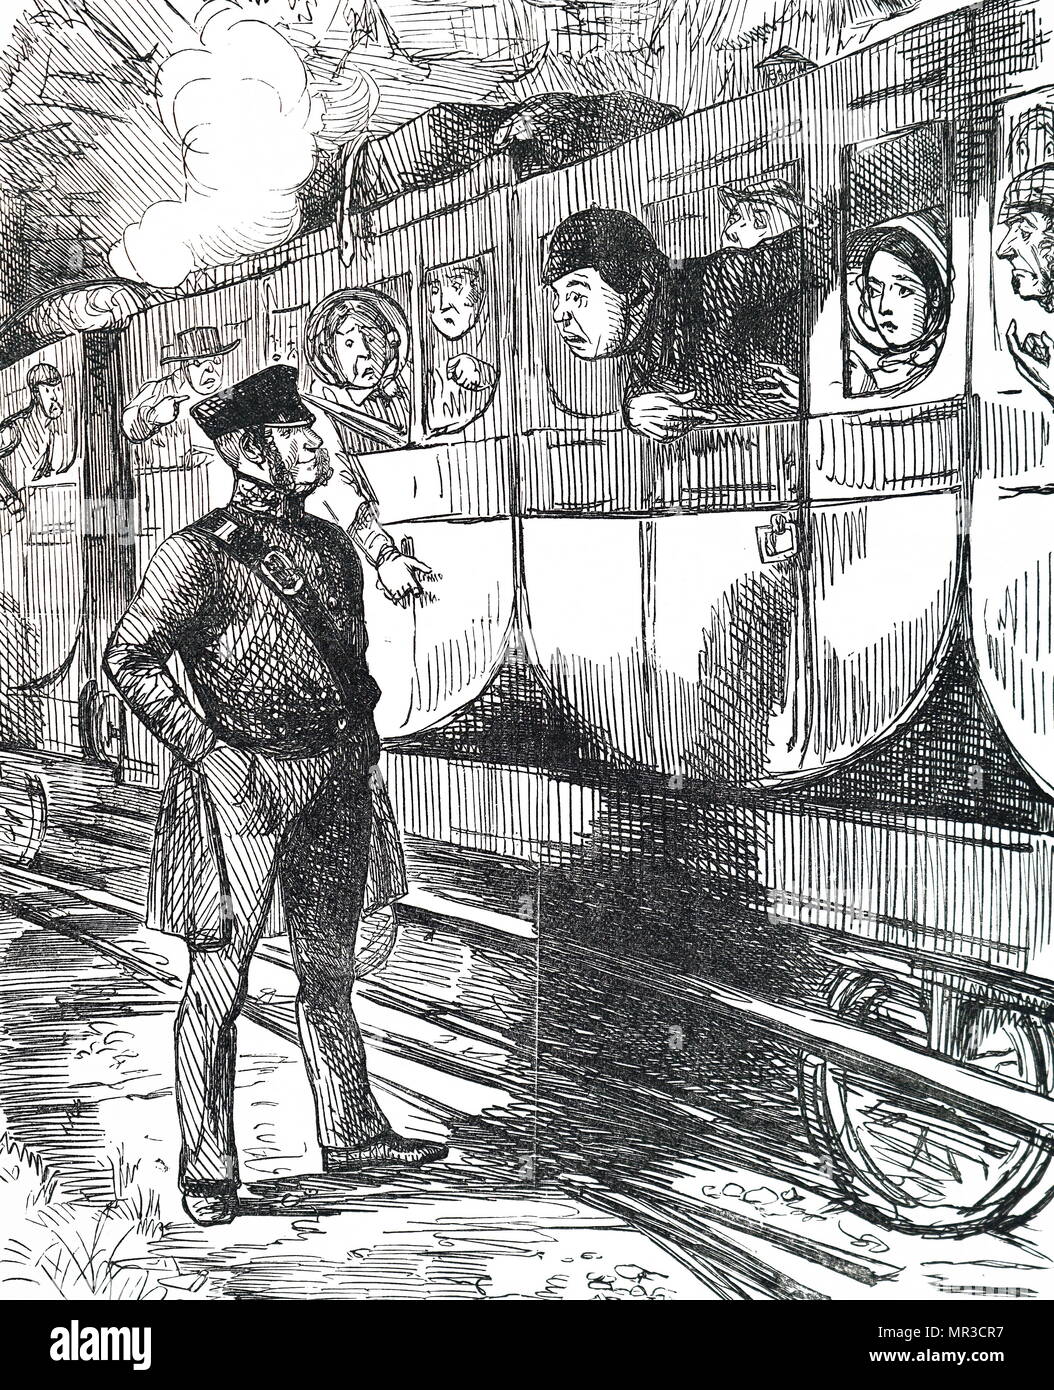 Cartoon titulada 'Railway Fusión'. Los pasajeros aparecen en un estado de pánico como un tren está llegando rápidamente detrás de ellos, como están pegados en la plataforma. Ilustrado por John Leech (1817-1864) Inglés un caricaturista e ilustrador. Fecha del siglo XIX Foto de stock